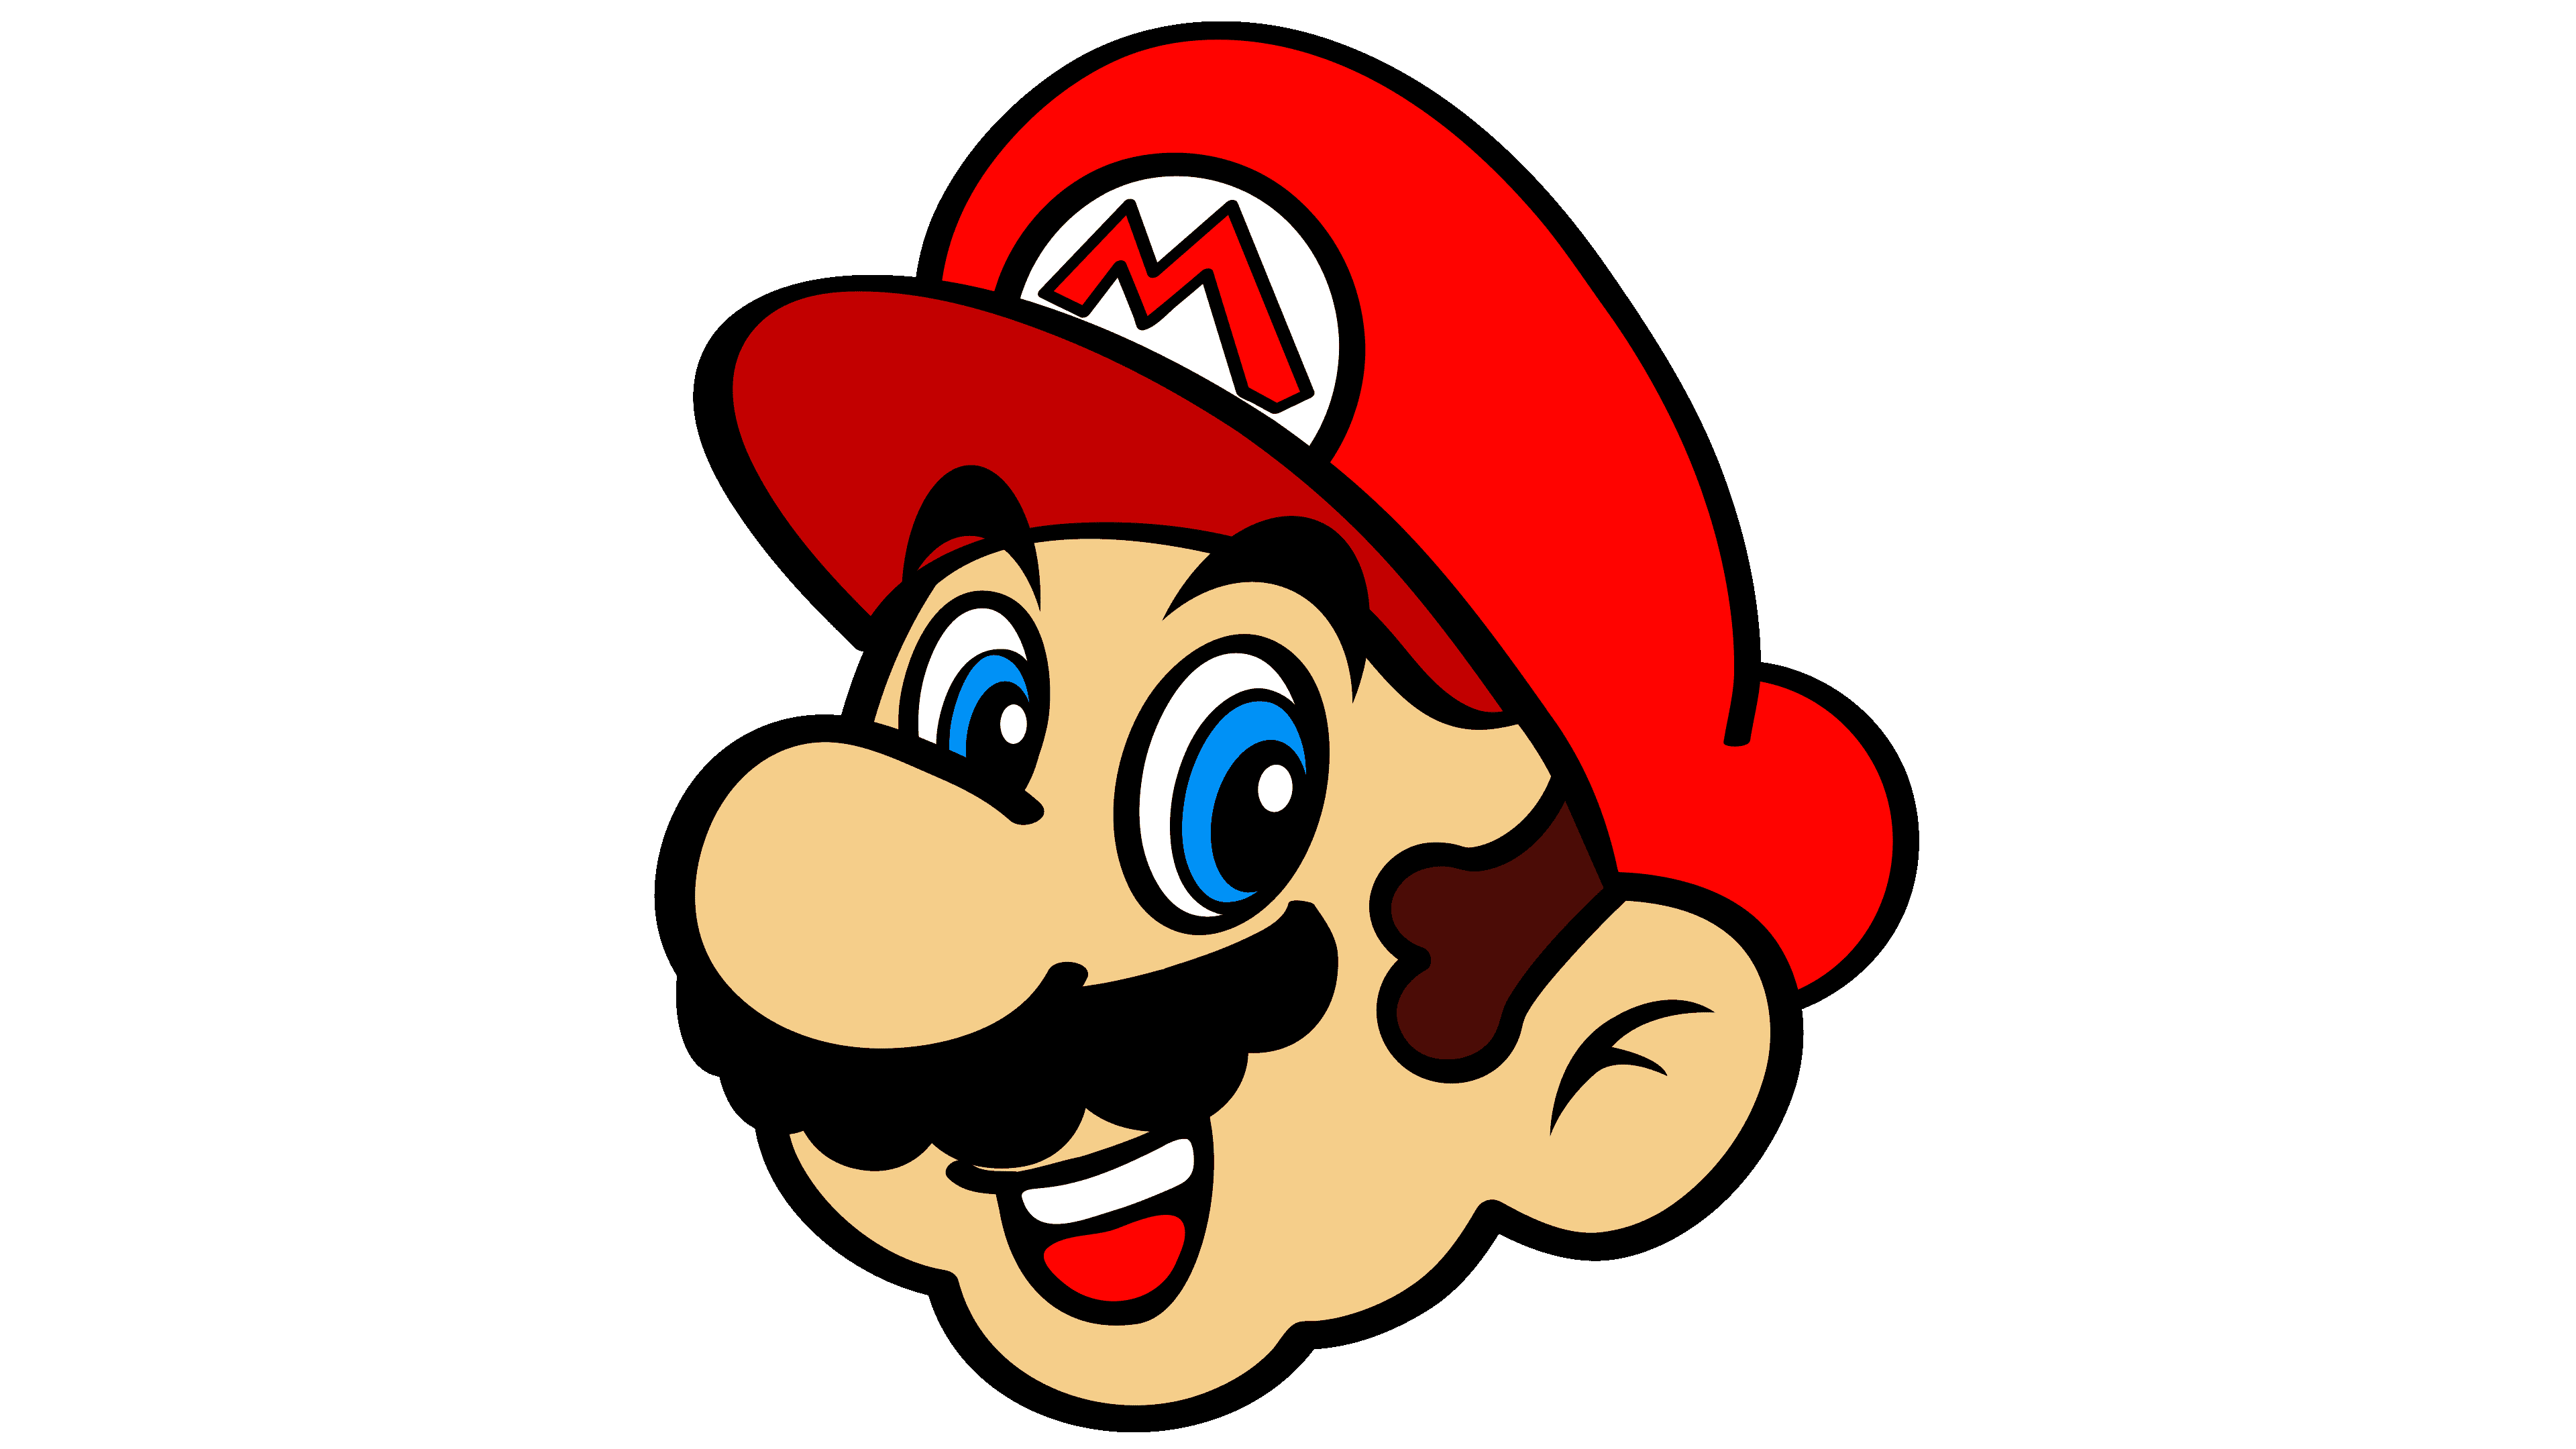 Incierto muñeca Polvo Super Mario Logo, symbol, meaning, history, PNG, brand